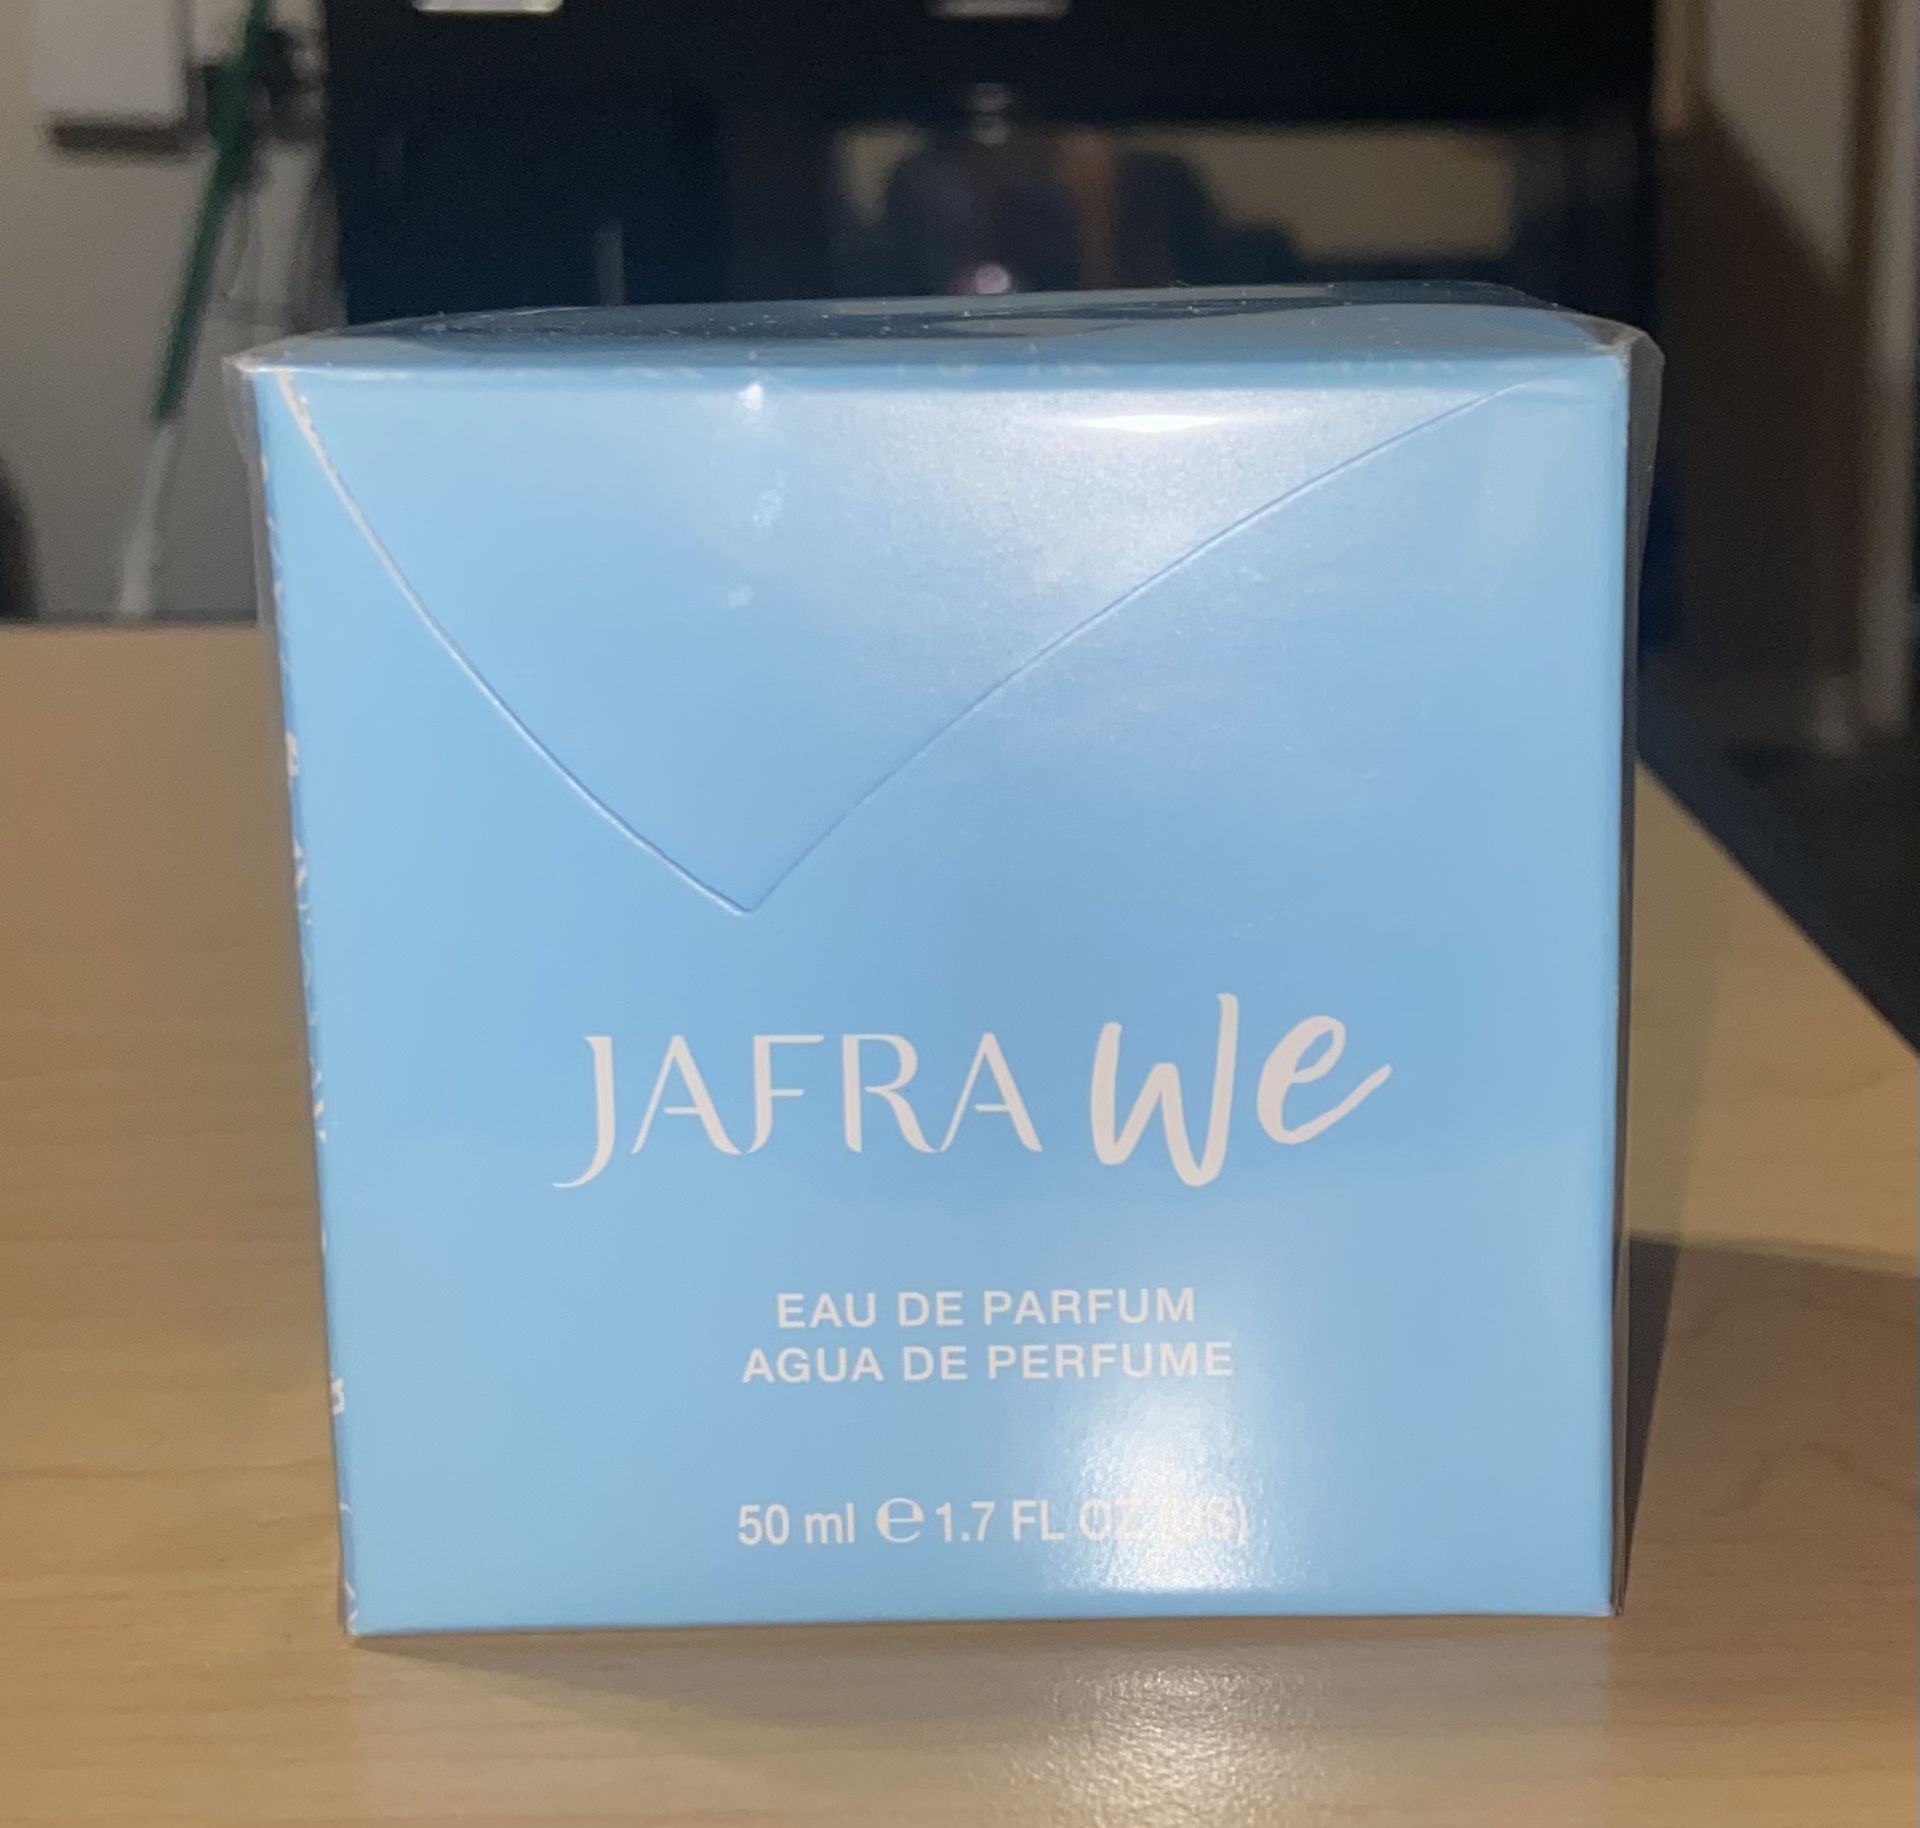 Jafra We Perfume